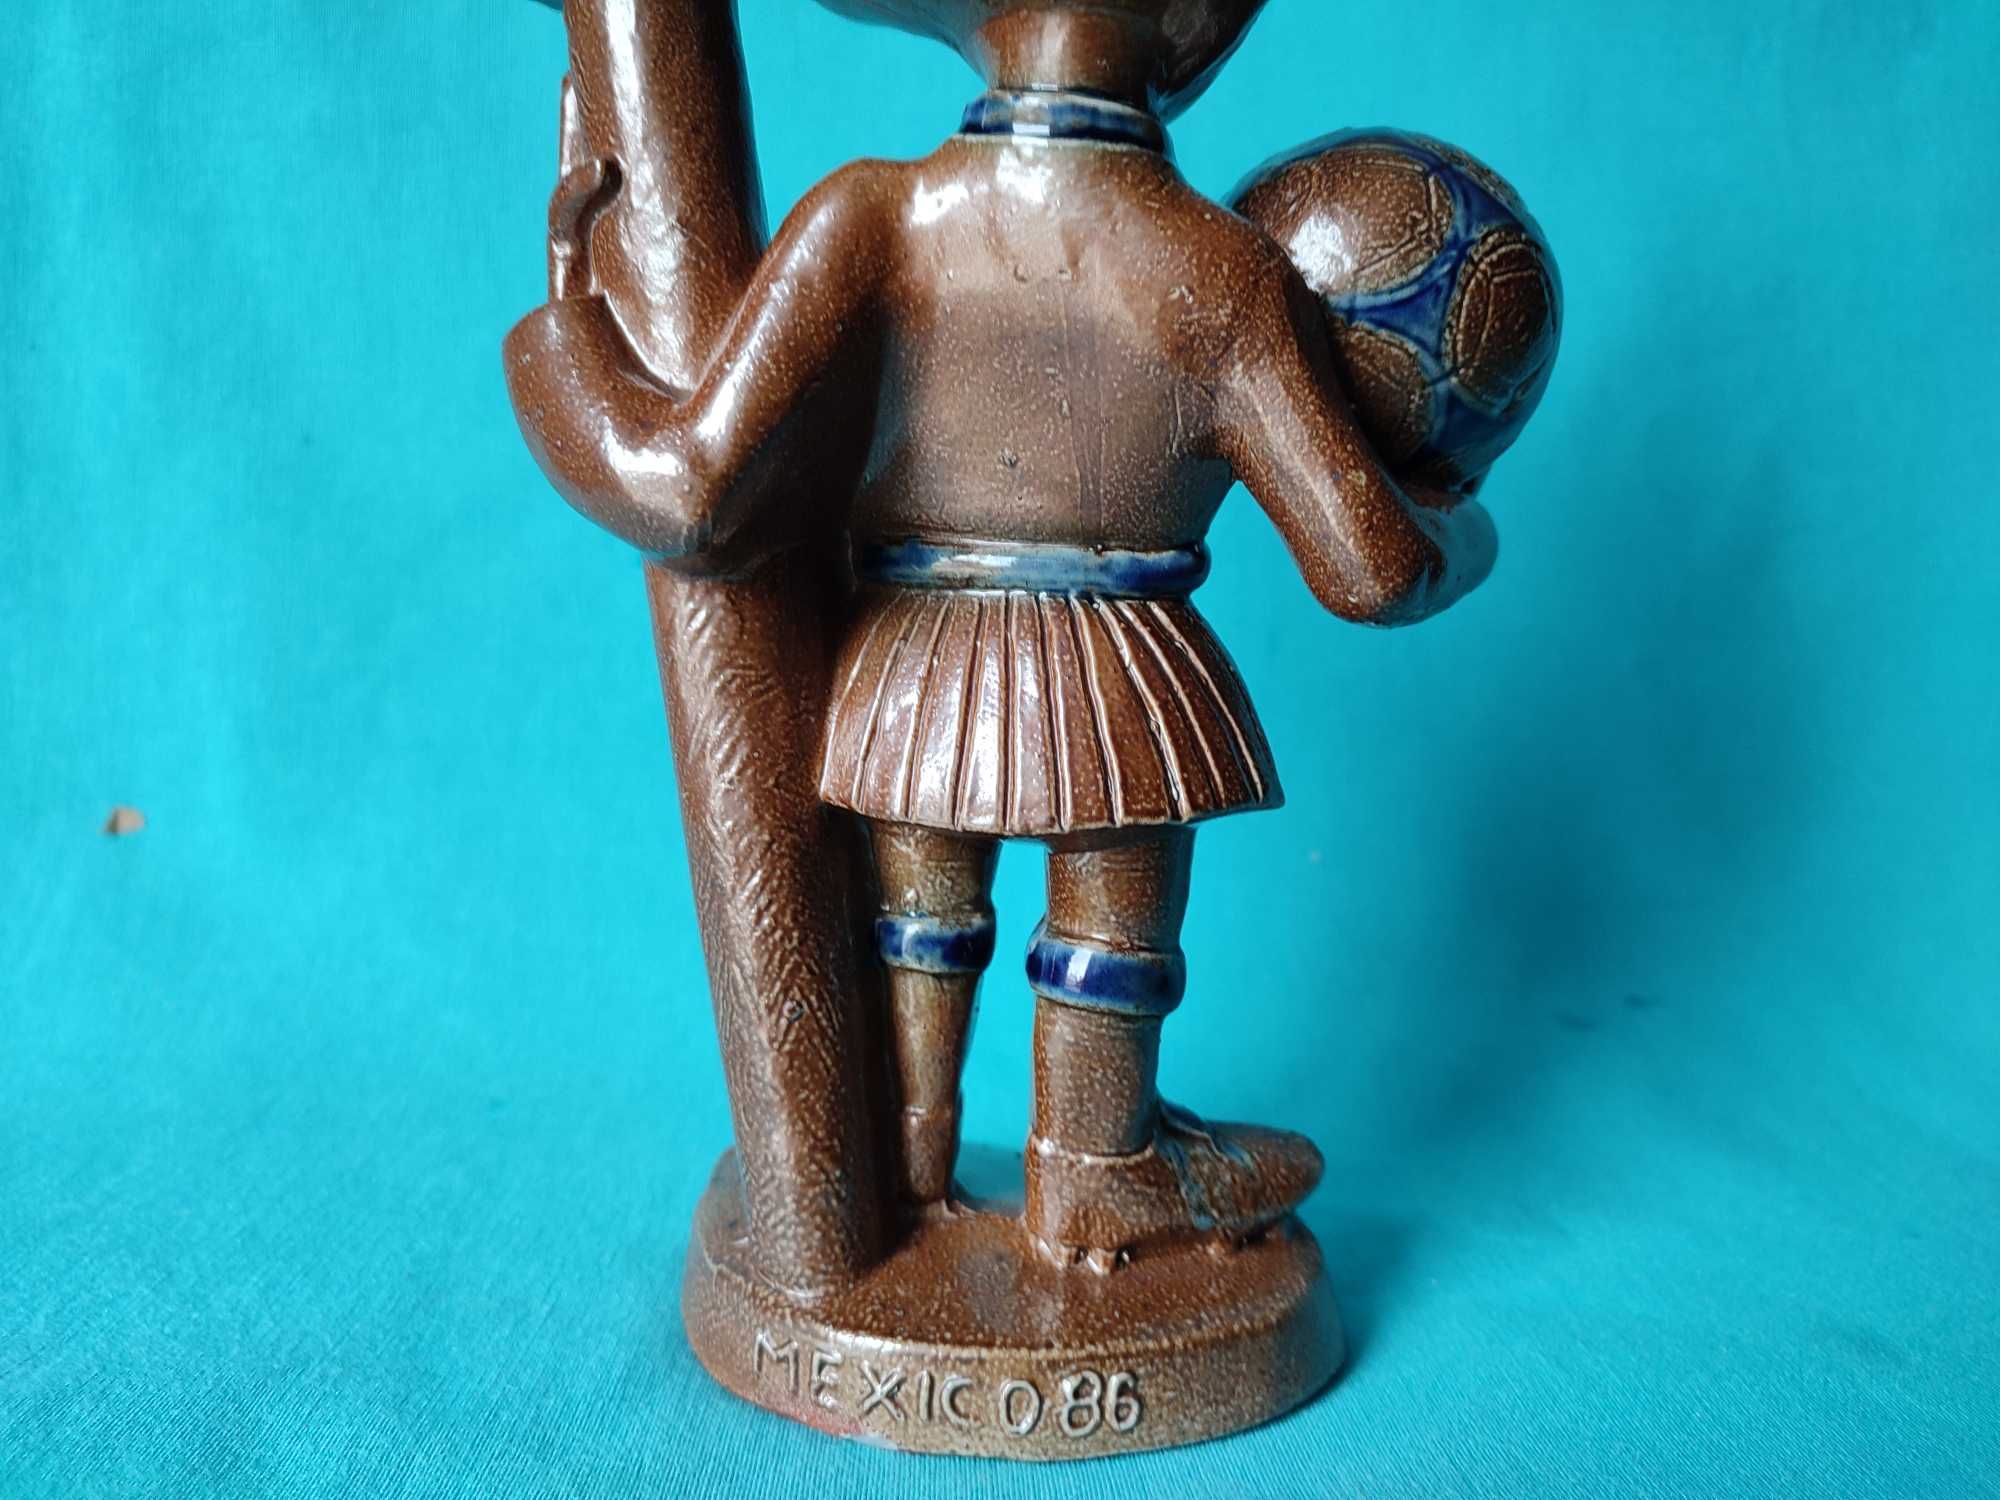 O 'Infante' Mascote da Selecção Nacional de Futebol Mundial México 86